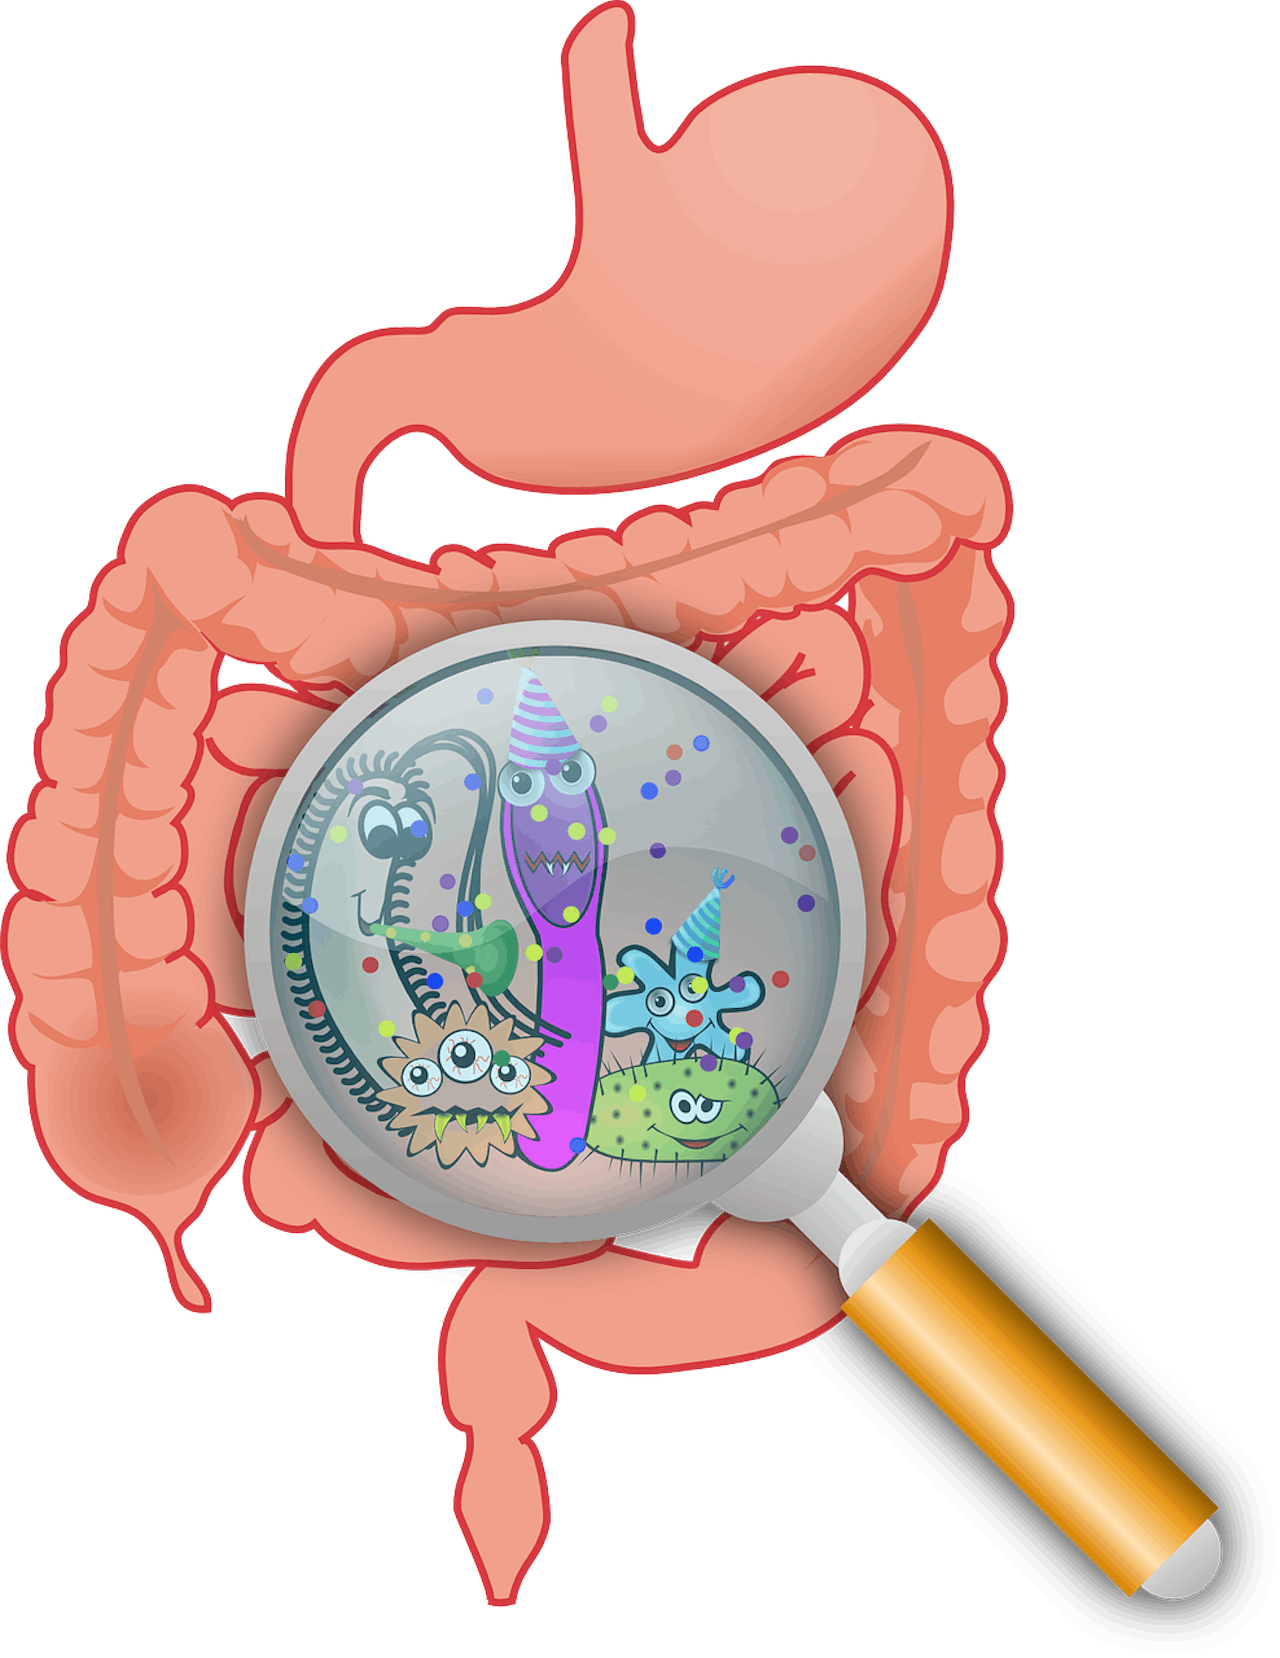 Een illustratie van de darmen. Met een vergrootglas wordt er ingezoomd op de bacteriën die leven in de darmen.